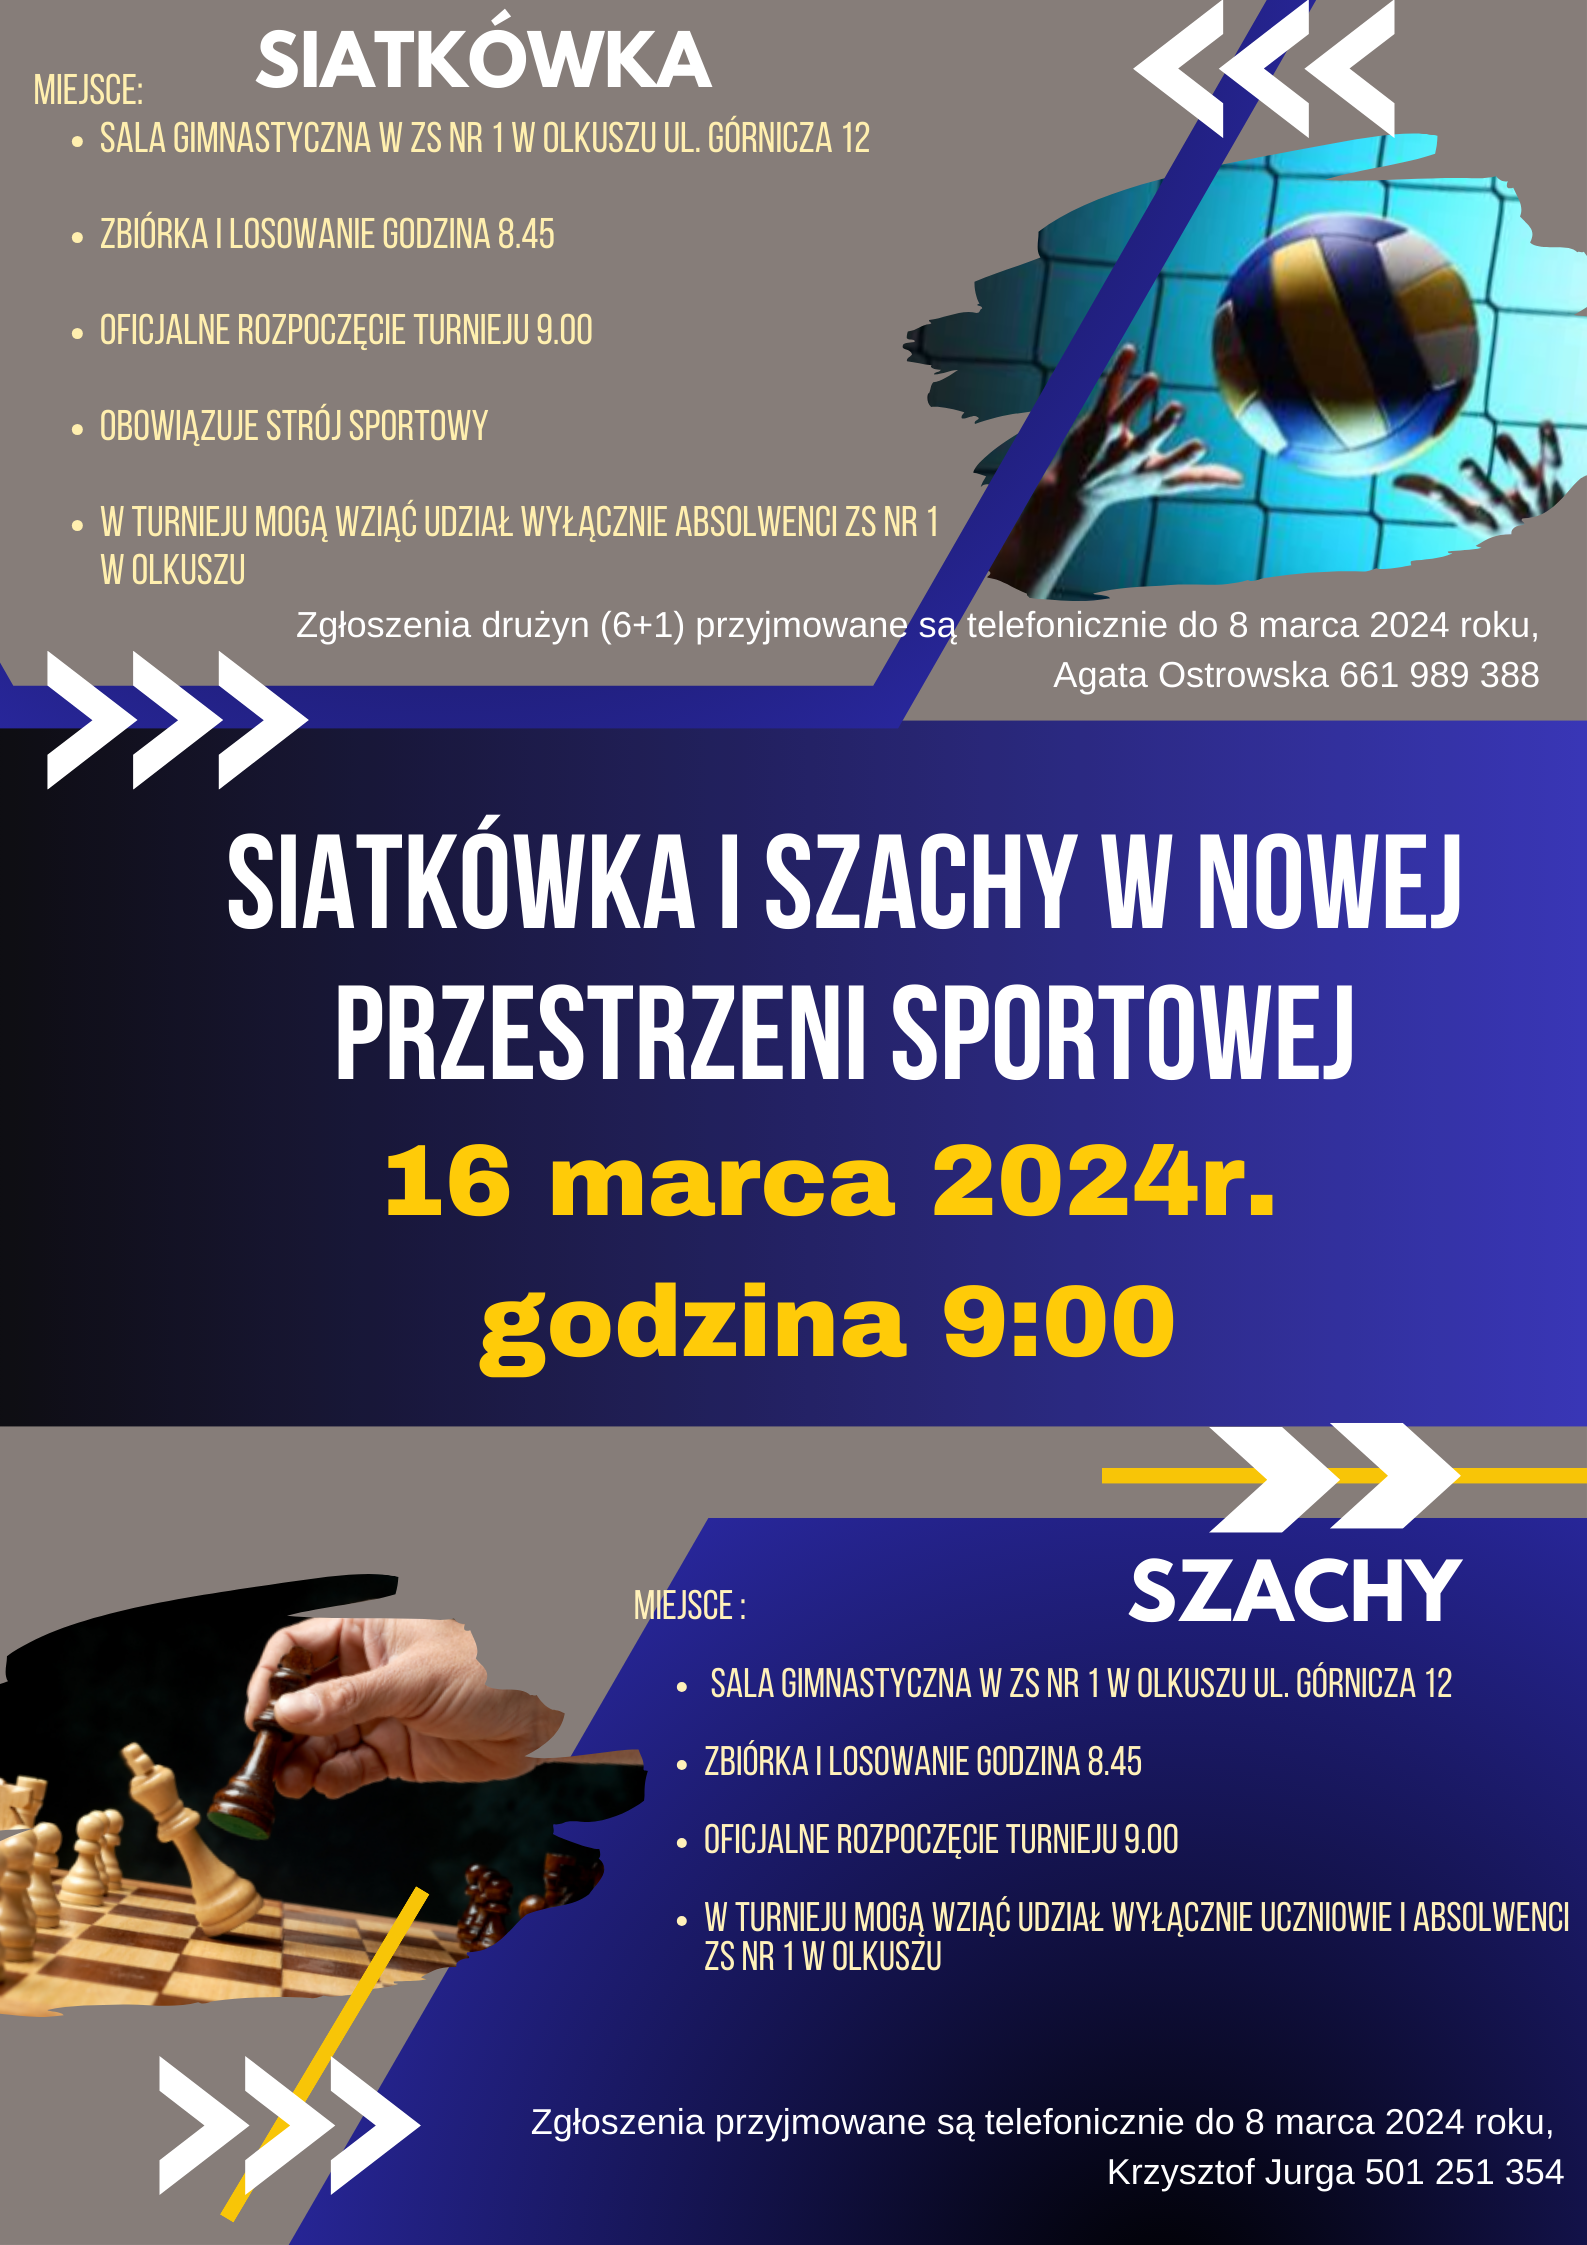 Plakat informacyjny o turnieju Siatkówka i Szachy